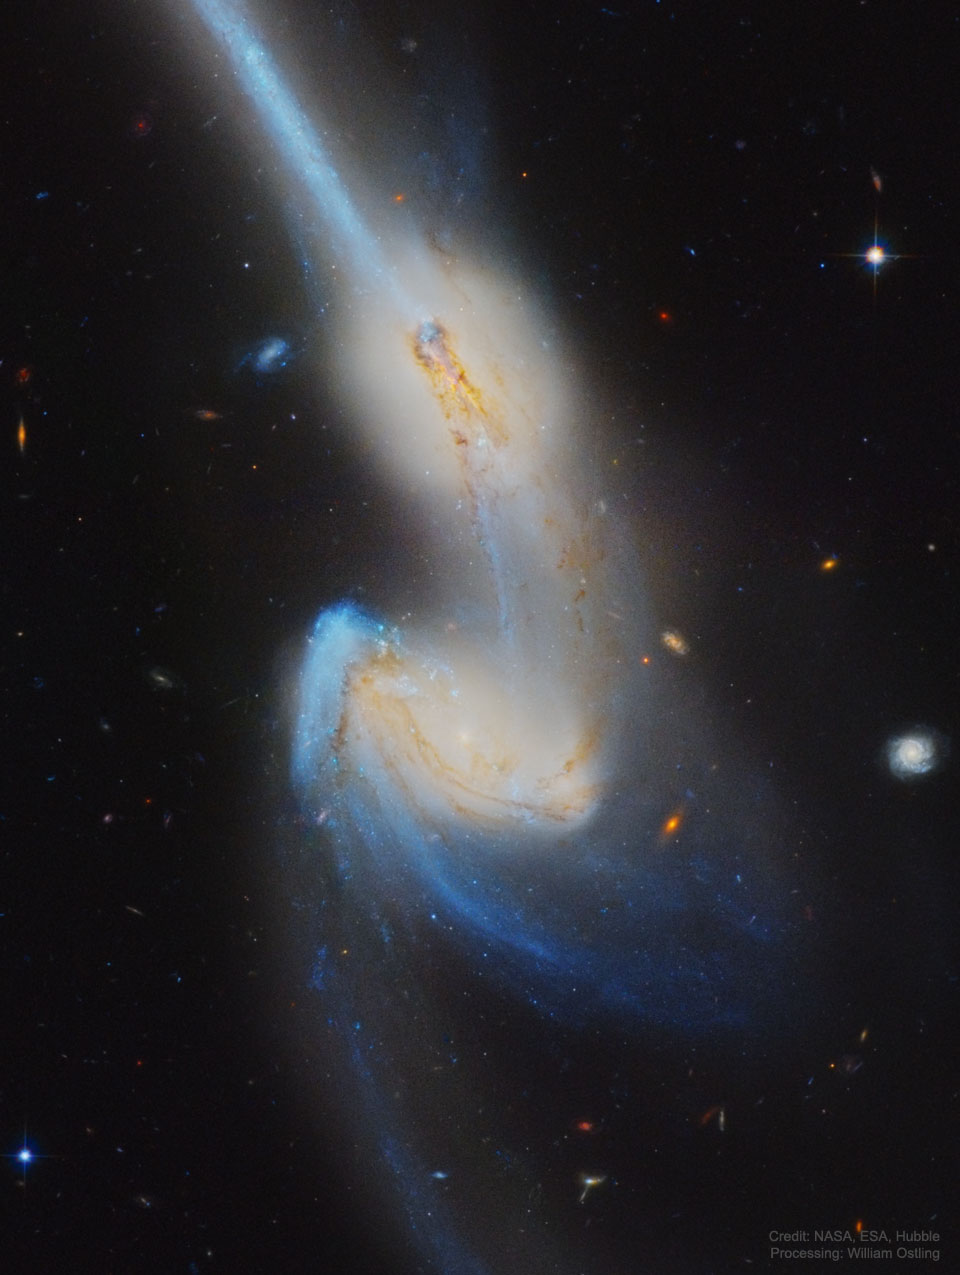 图片显示了碰撞星系NGC 4676的哈勃图像，因其长长的恒星尾巴而被称为“老鼠”。有关更多详细信息，请参阅说明。